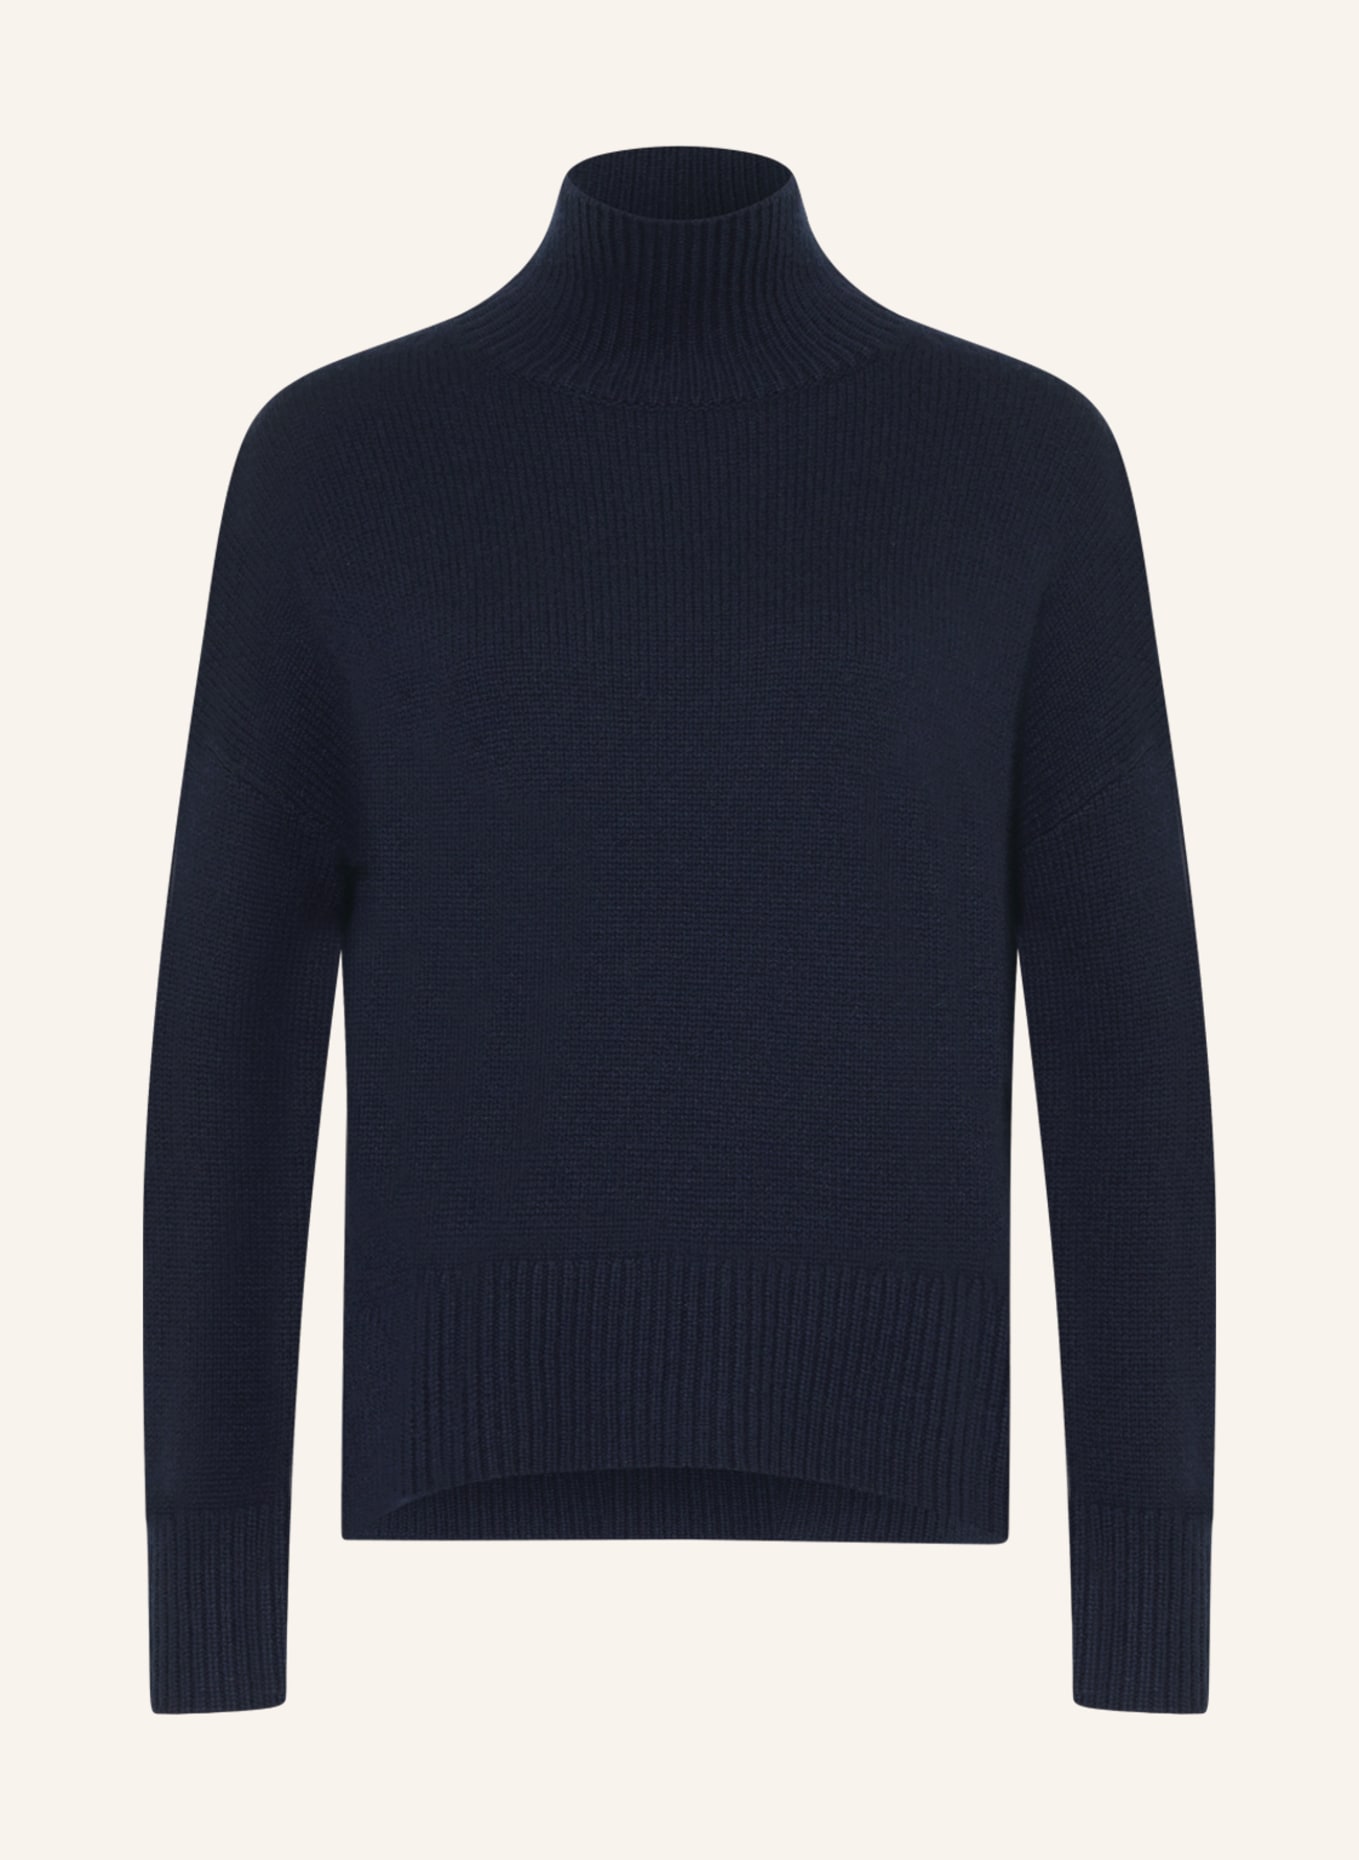 KUJTEN Cashmere-Pullover ULLA, Farbe: DUNKELBLAU (Bild 1)